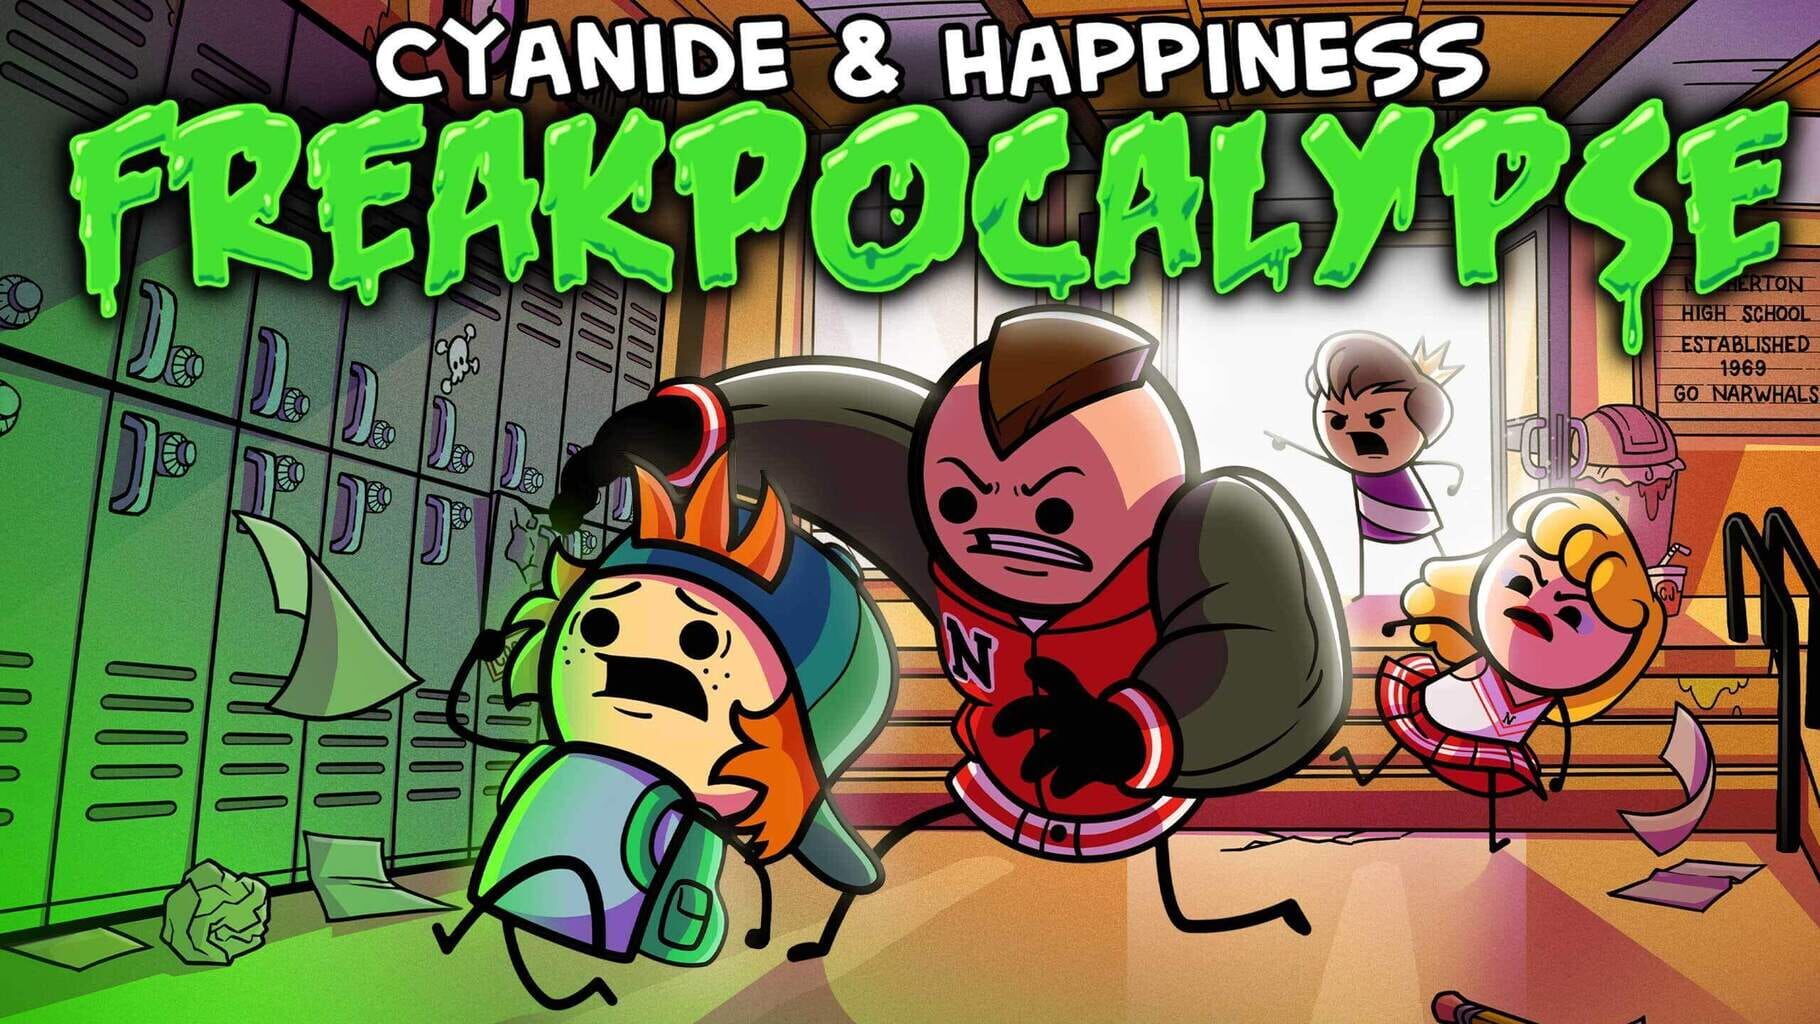 Cyanide & Happiness: Freakpocalypse artwork